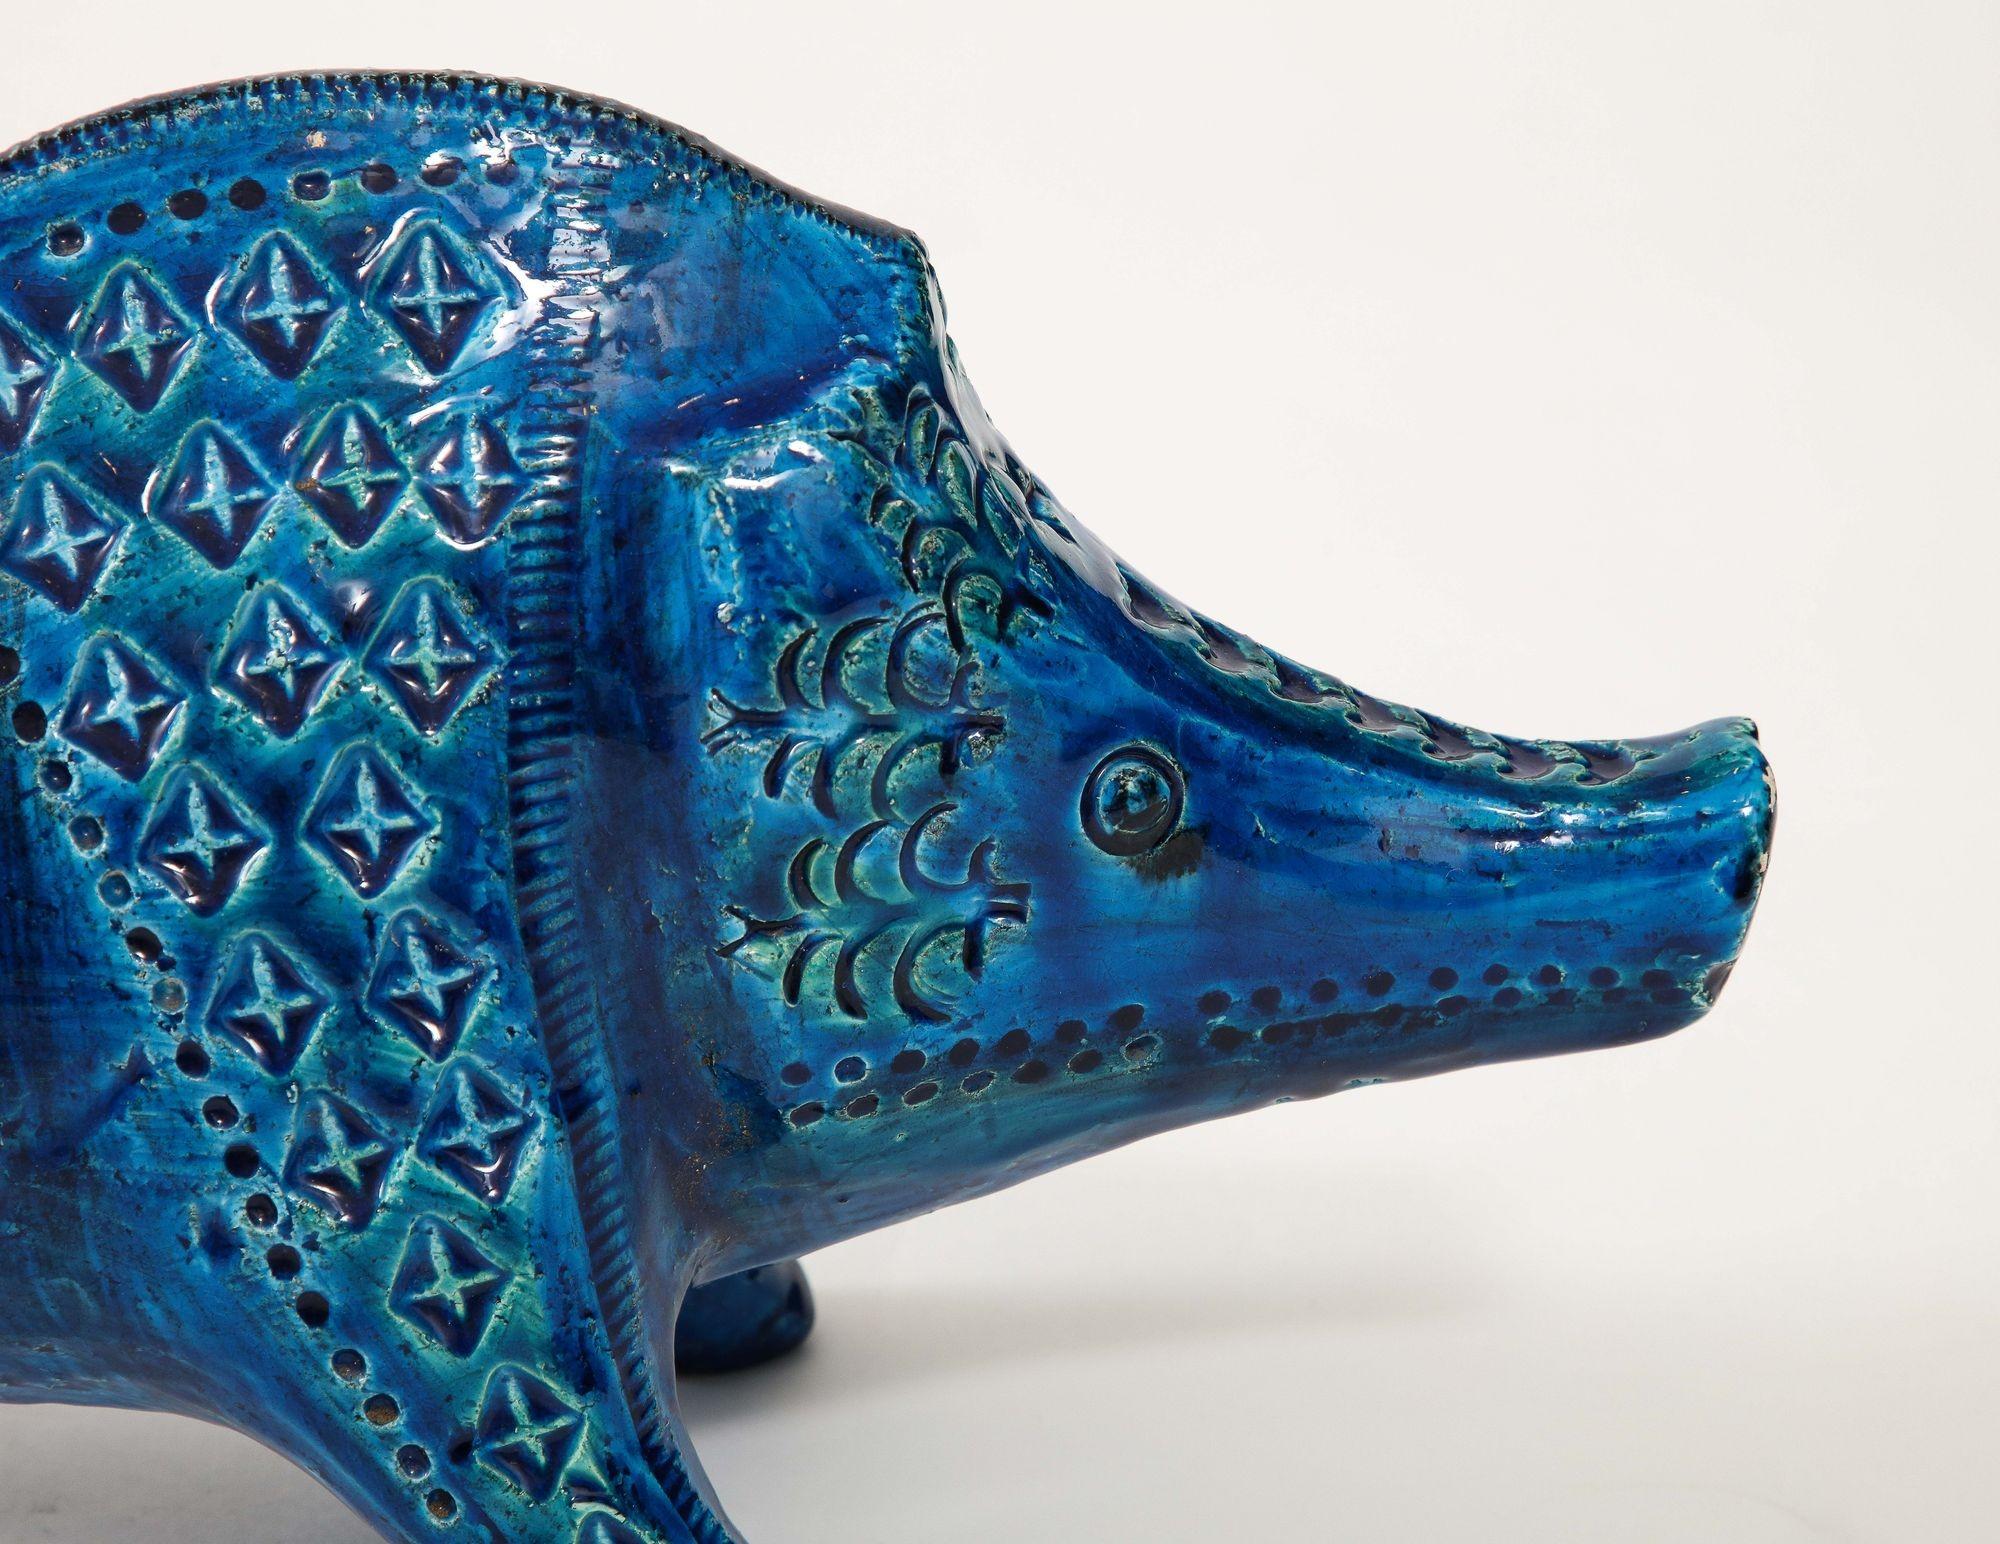 Le sanglier en céramique d'Aldo Londi, créé pour Bitossi dans l'émail bleu de Rimini vers 1960, est une représentation étonnante de l'art italien de la céramique. Réalisée avec une attention méticuleuse aux détails, cette sculpture de sanglier